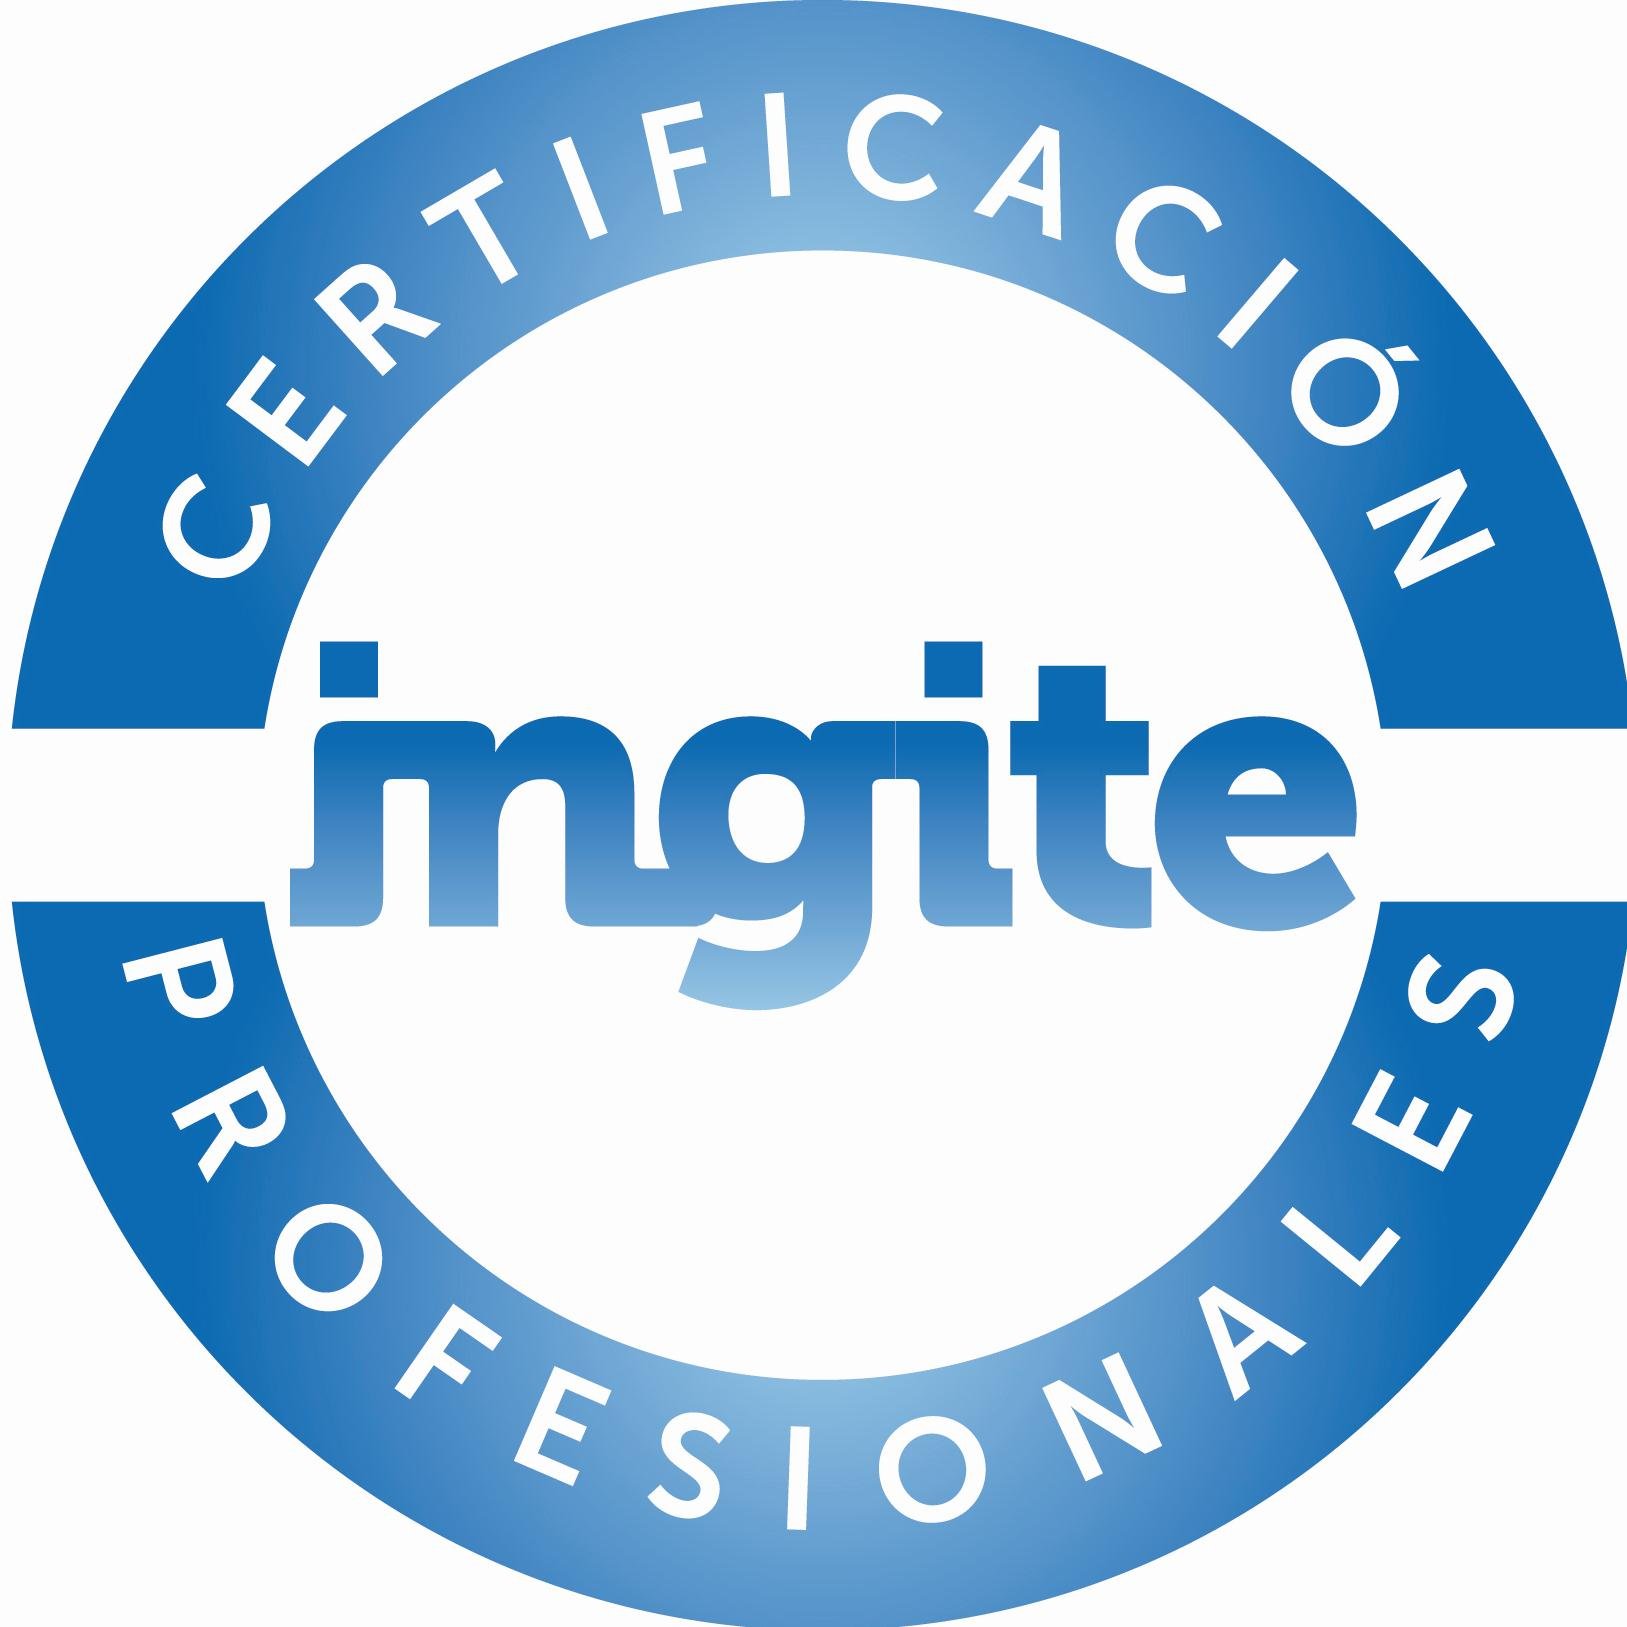 El Instituto de Graduados en Ingeniería e Ingenieros Técnicos de España (INGITE) es una entidad de carácter científico que representa a más de 350.000 personas.